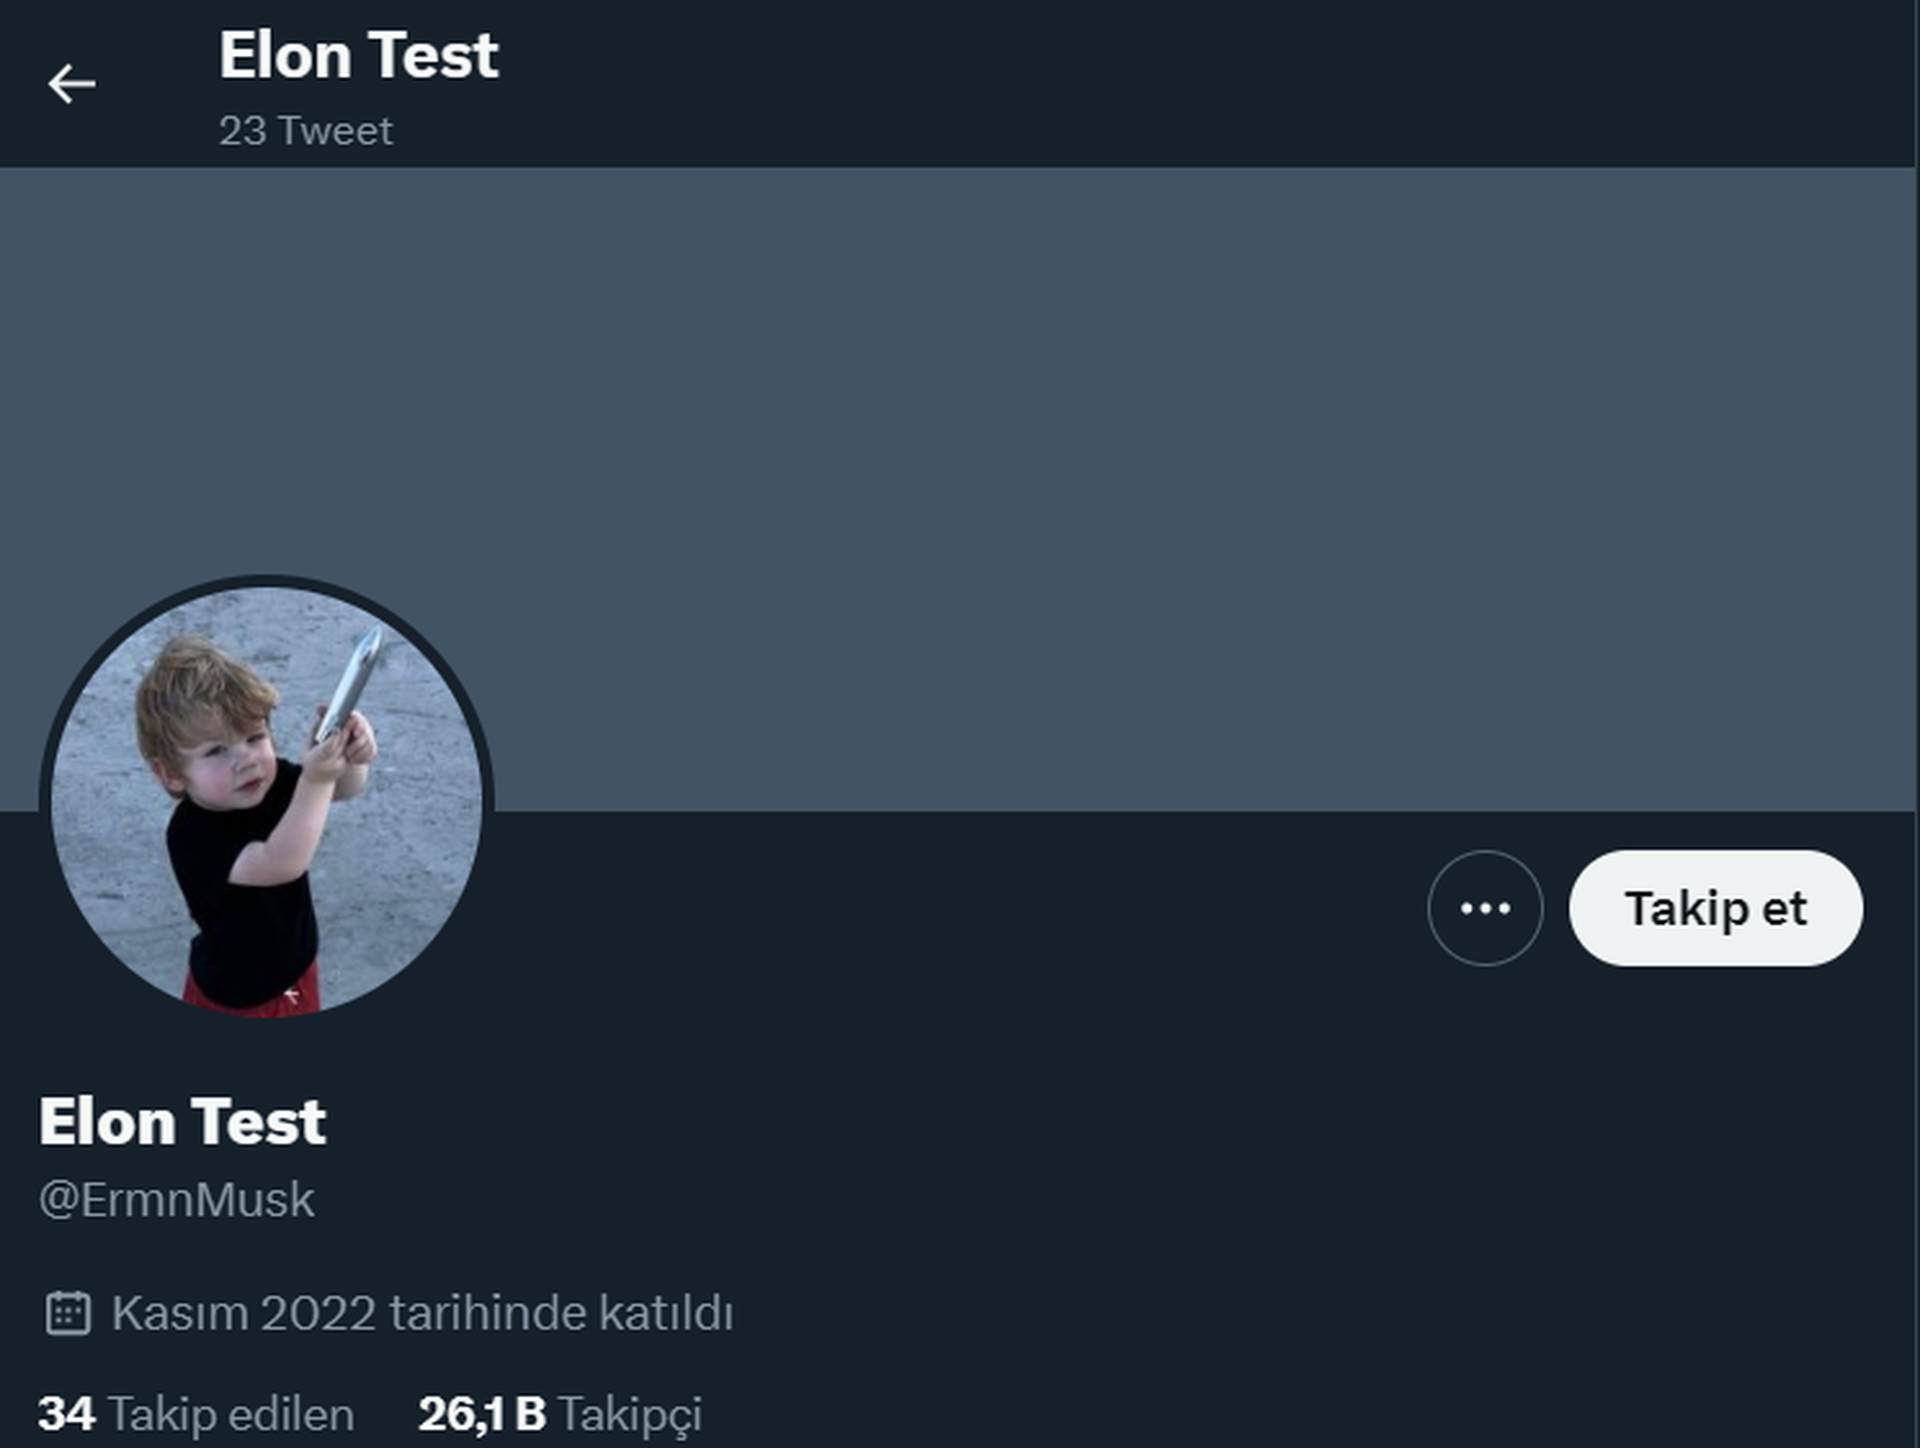 elon musk's alt account 